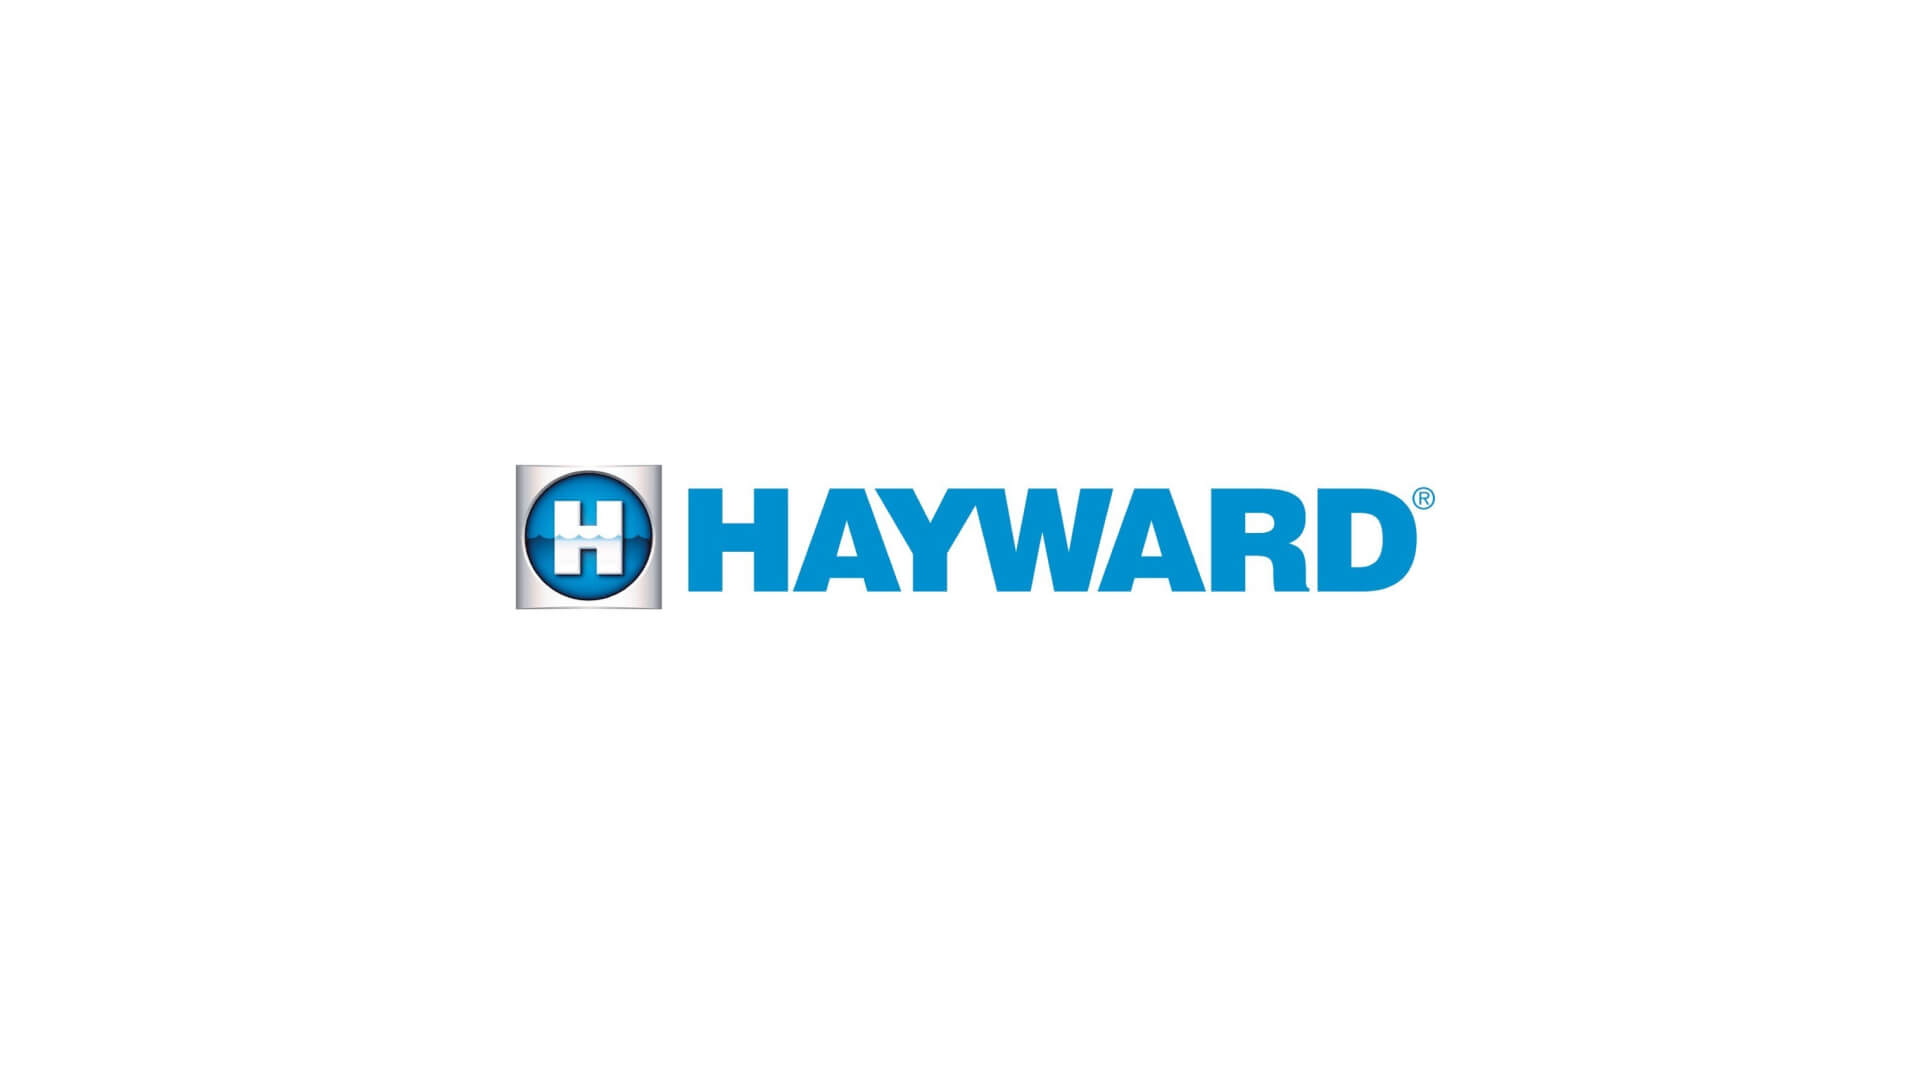 Hayward logo in color